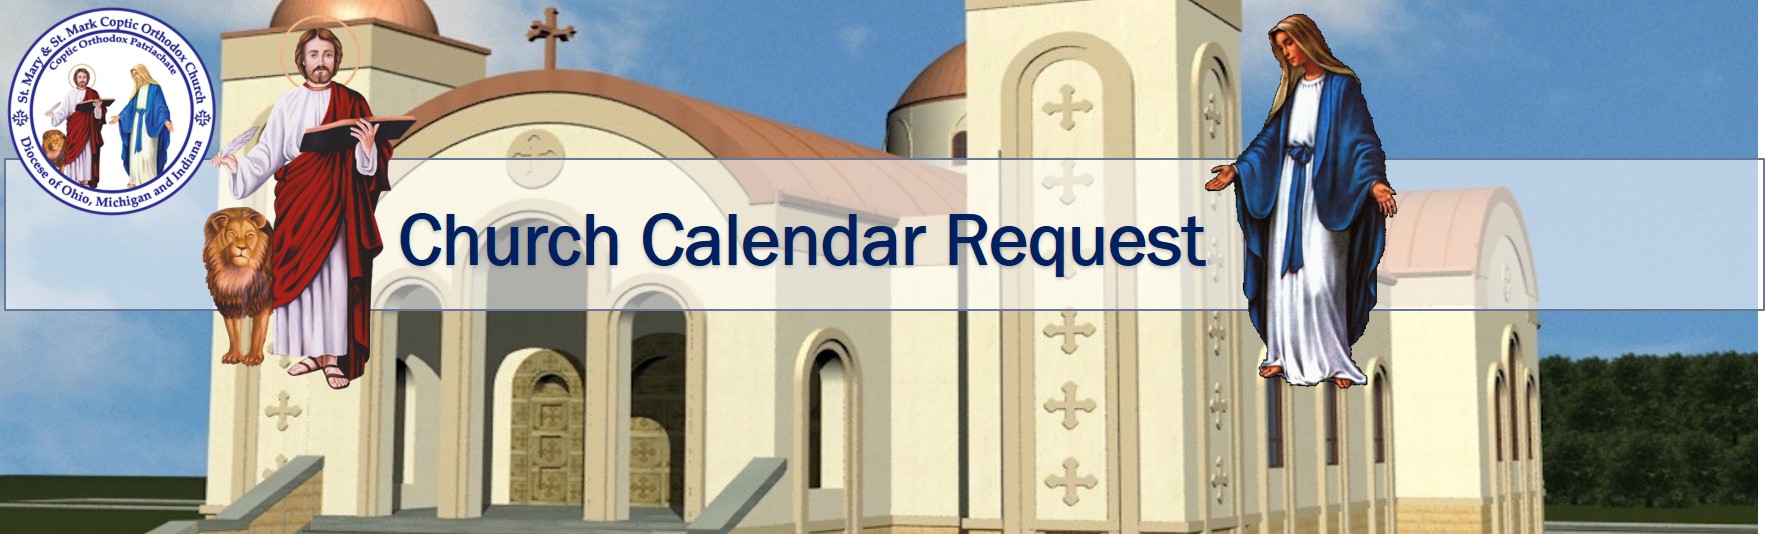 Church Calendar Request